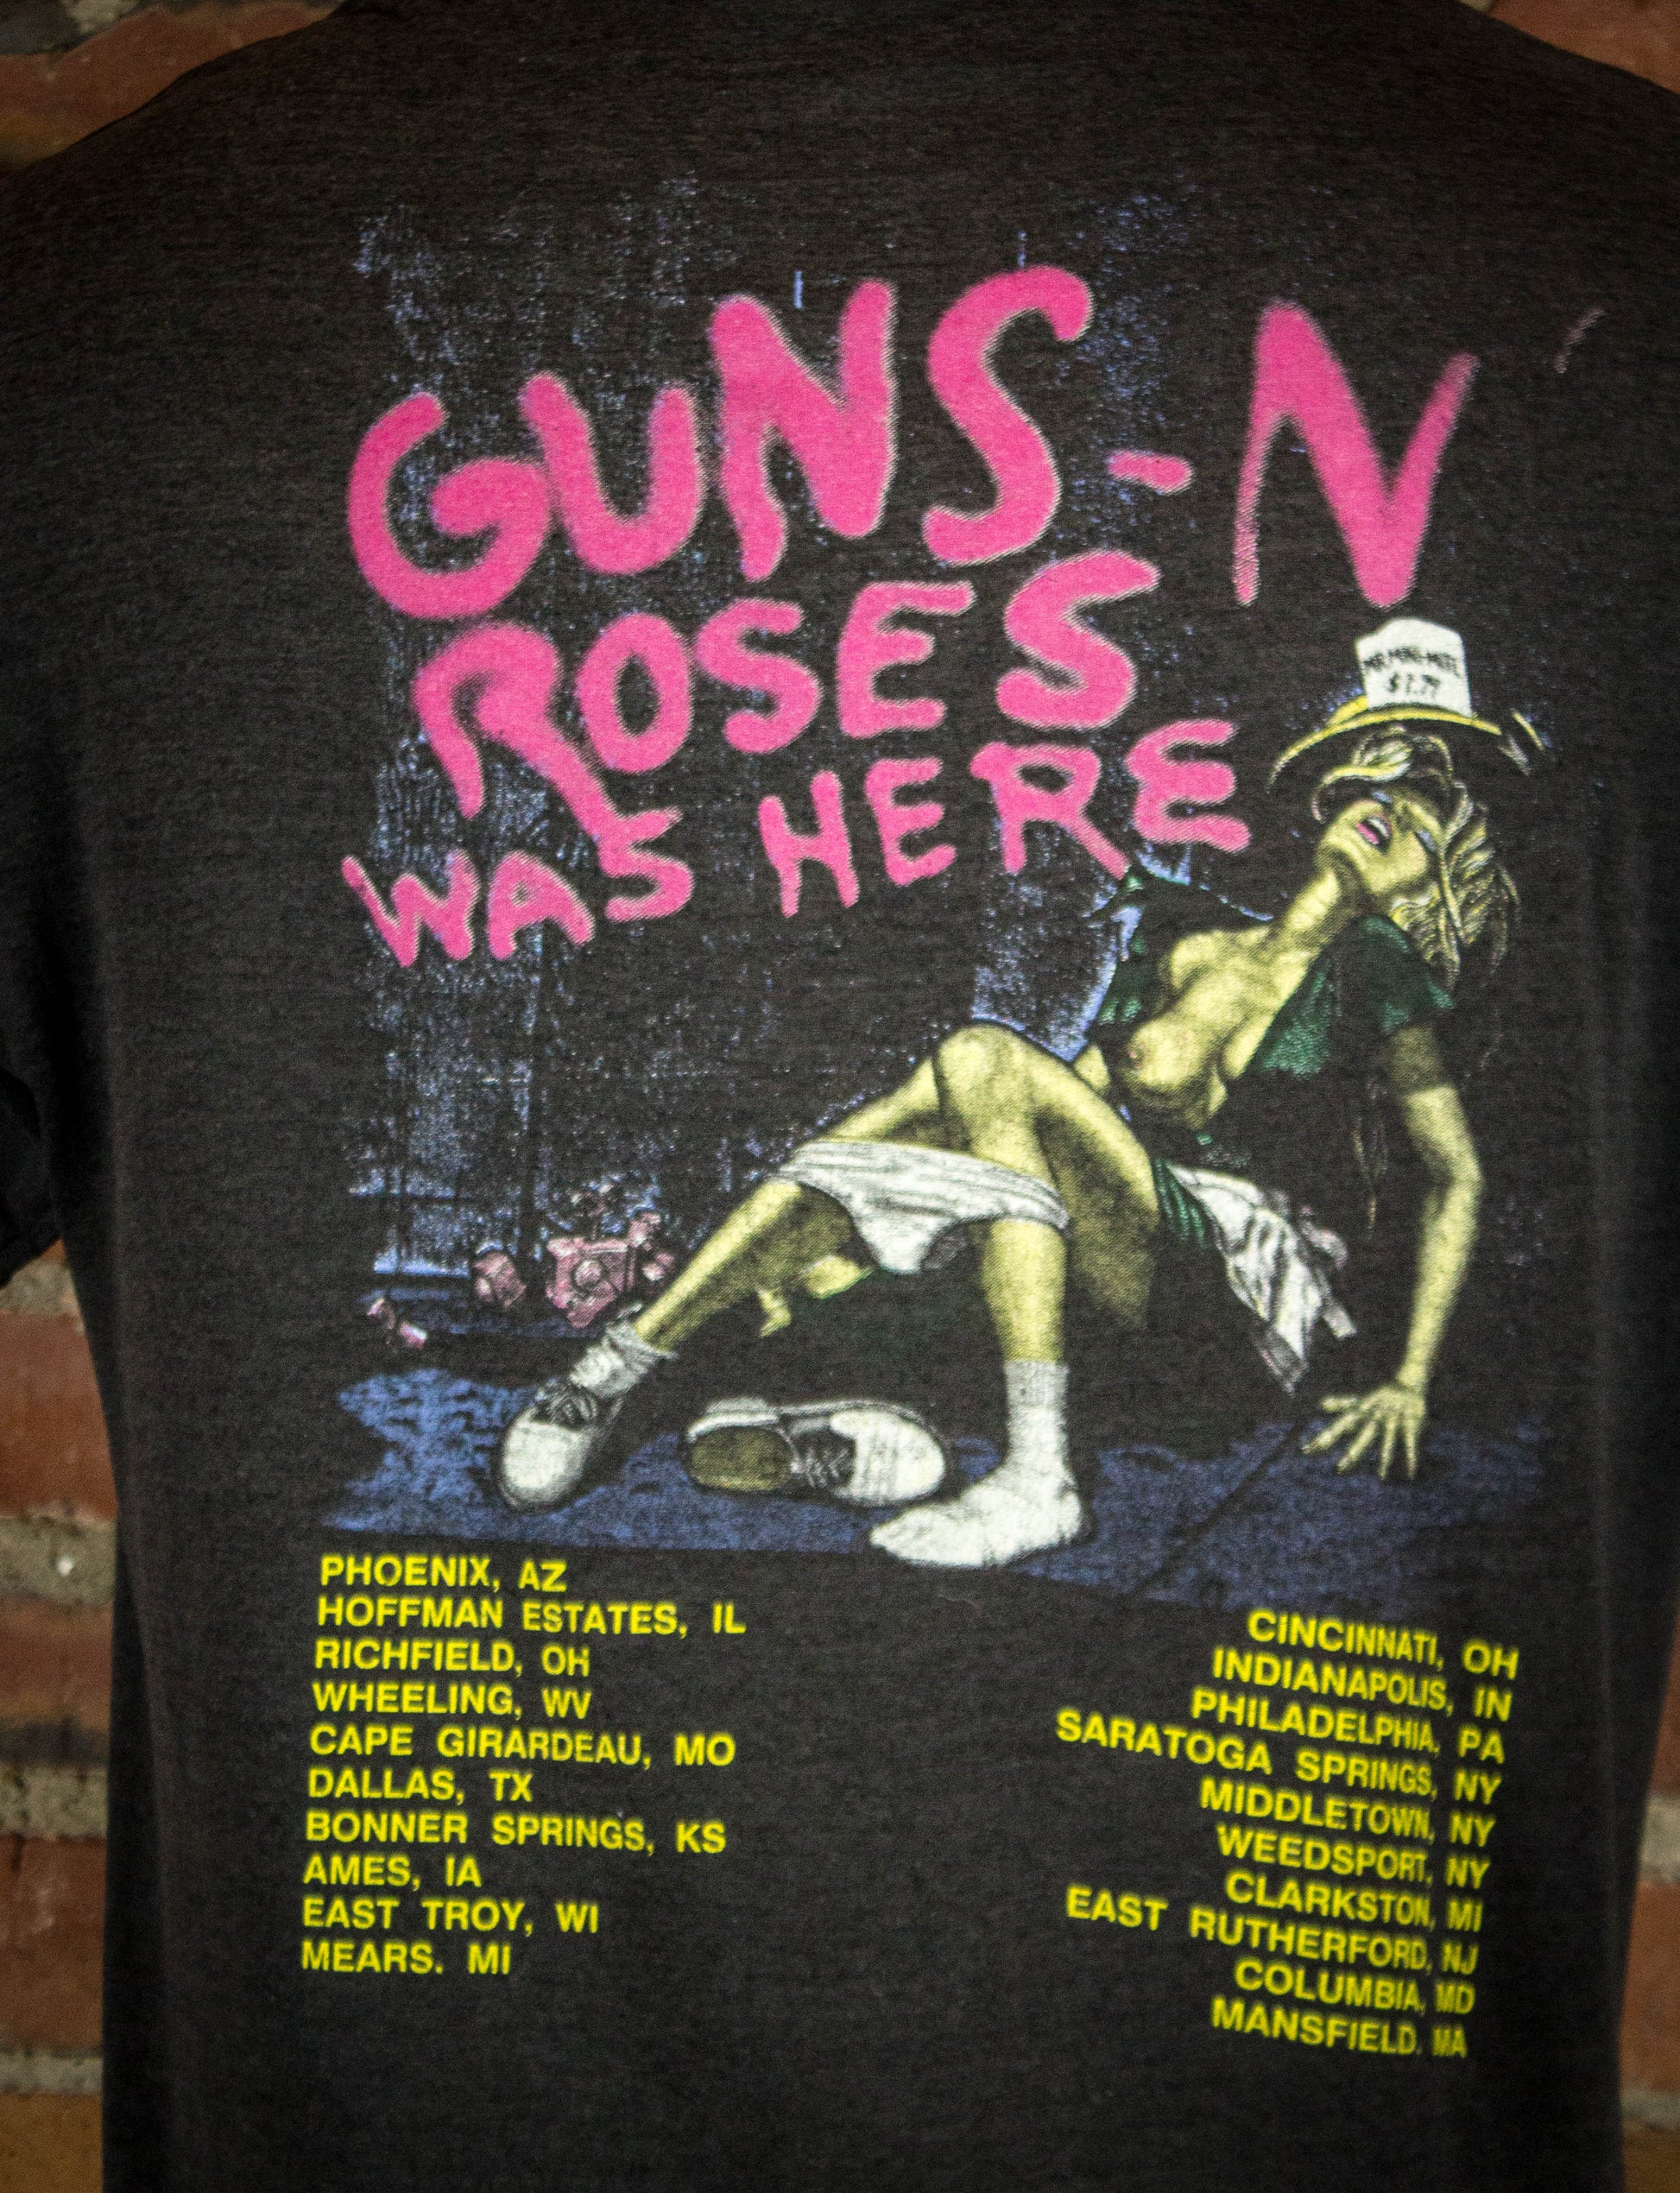 Vintage Guns N Roses 1987 1st Tour Dates Appetite For Destruction Tour Black Concert T Shirt XL